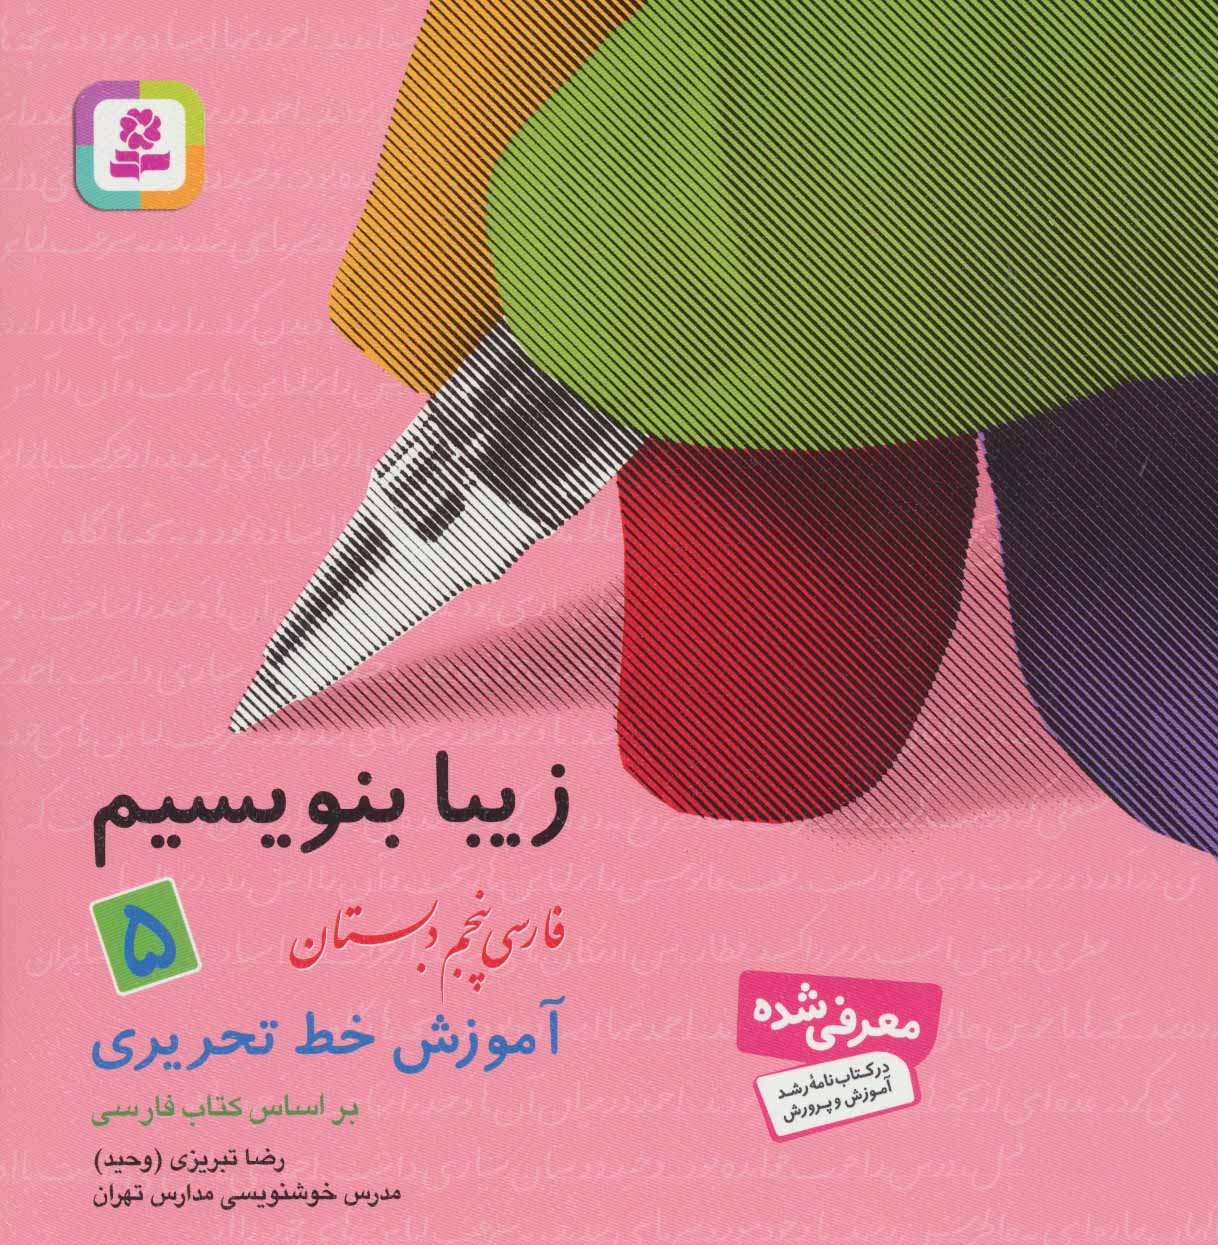 زیبا بنویسیم 5 فارسی پنجم دبستان آموزش خط تحریری(قدیانی)